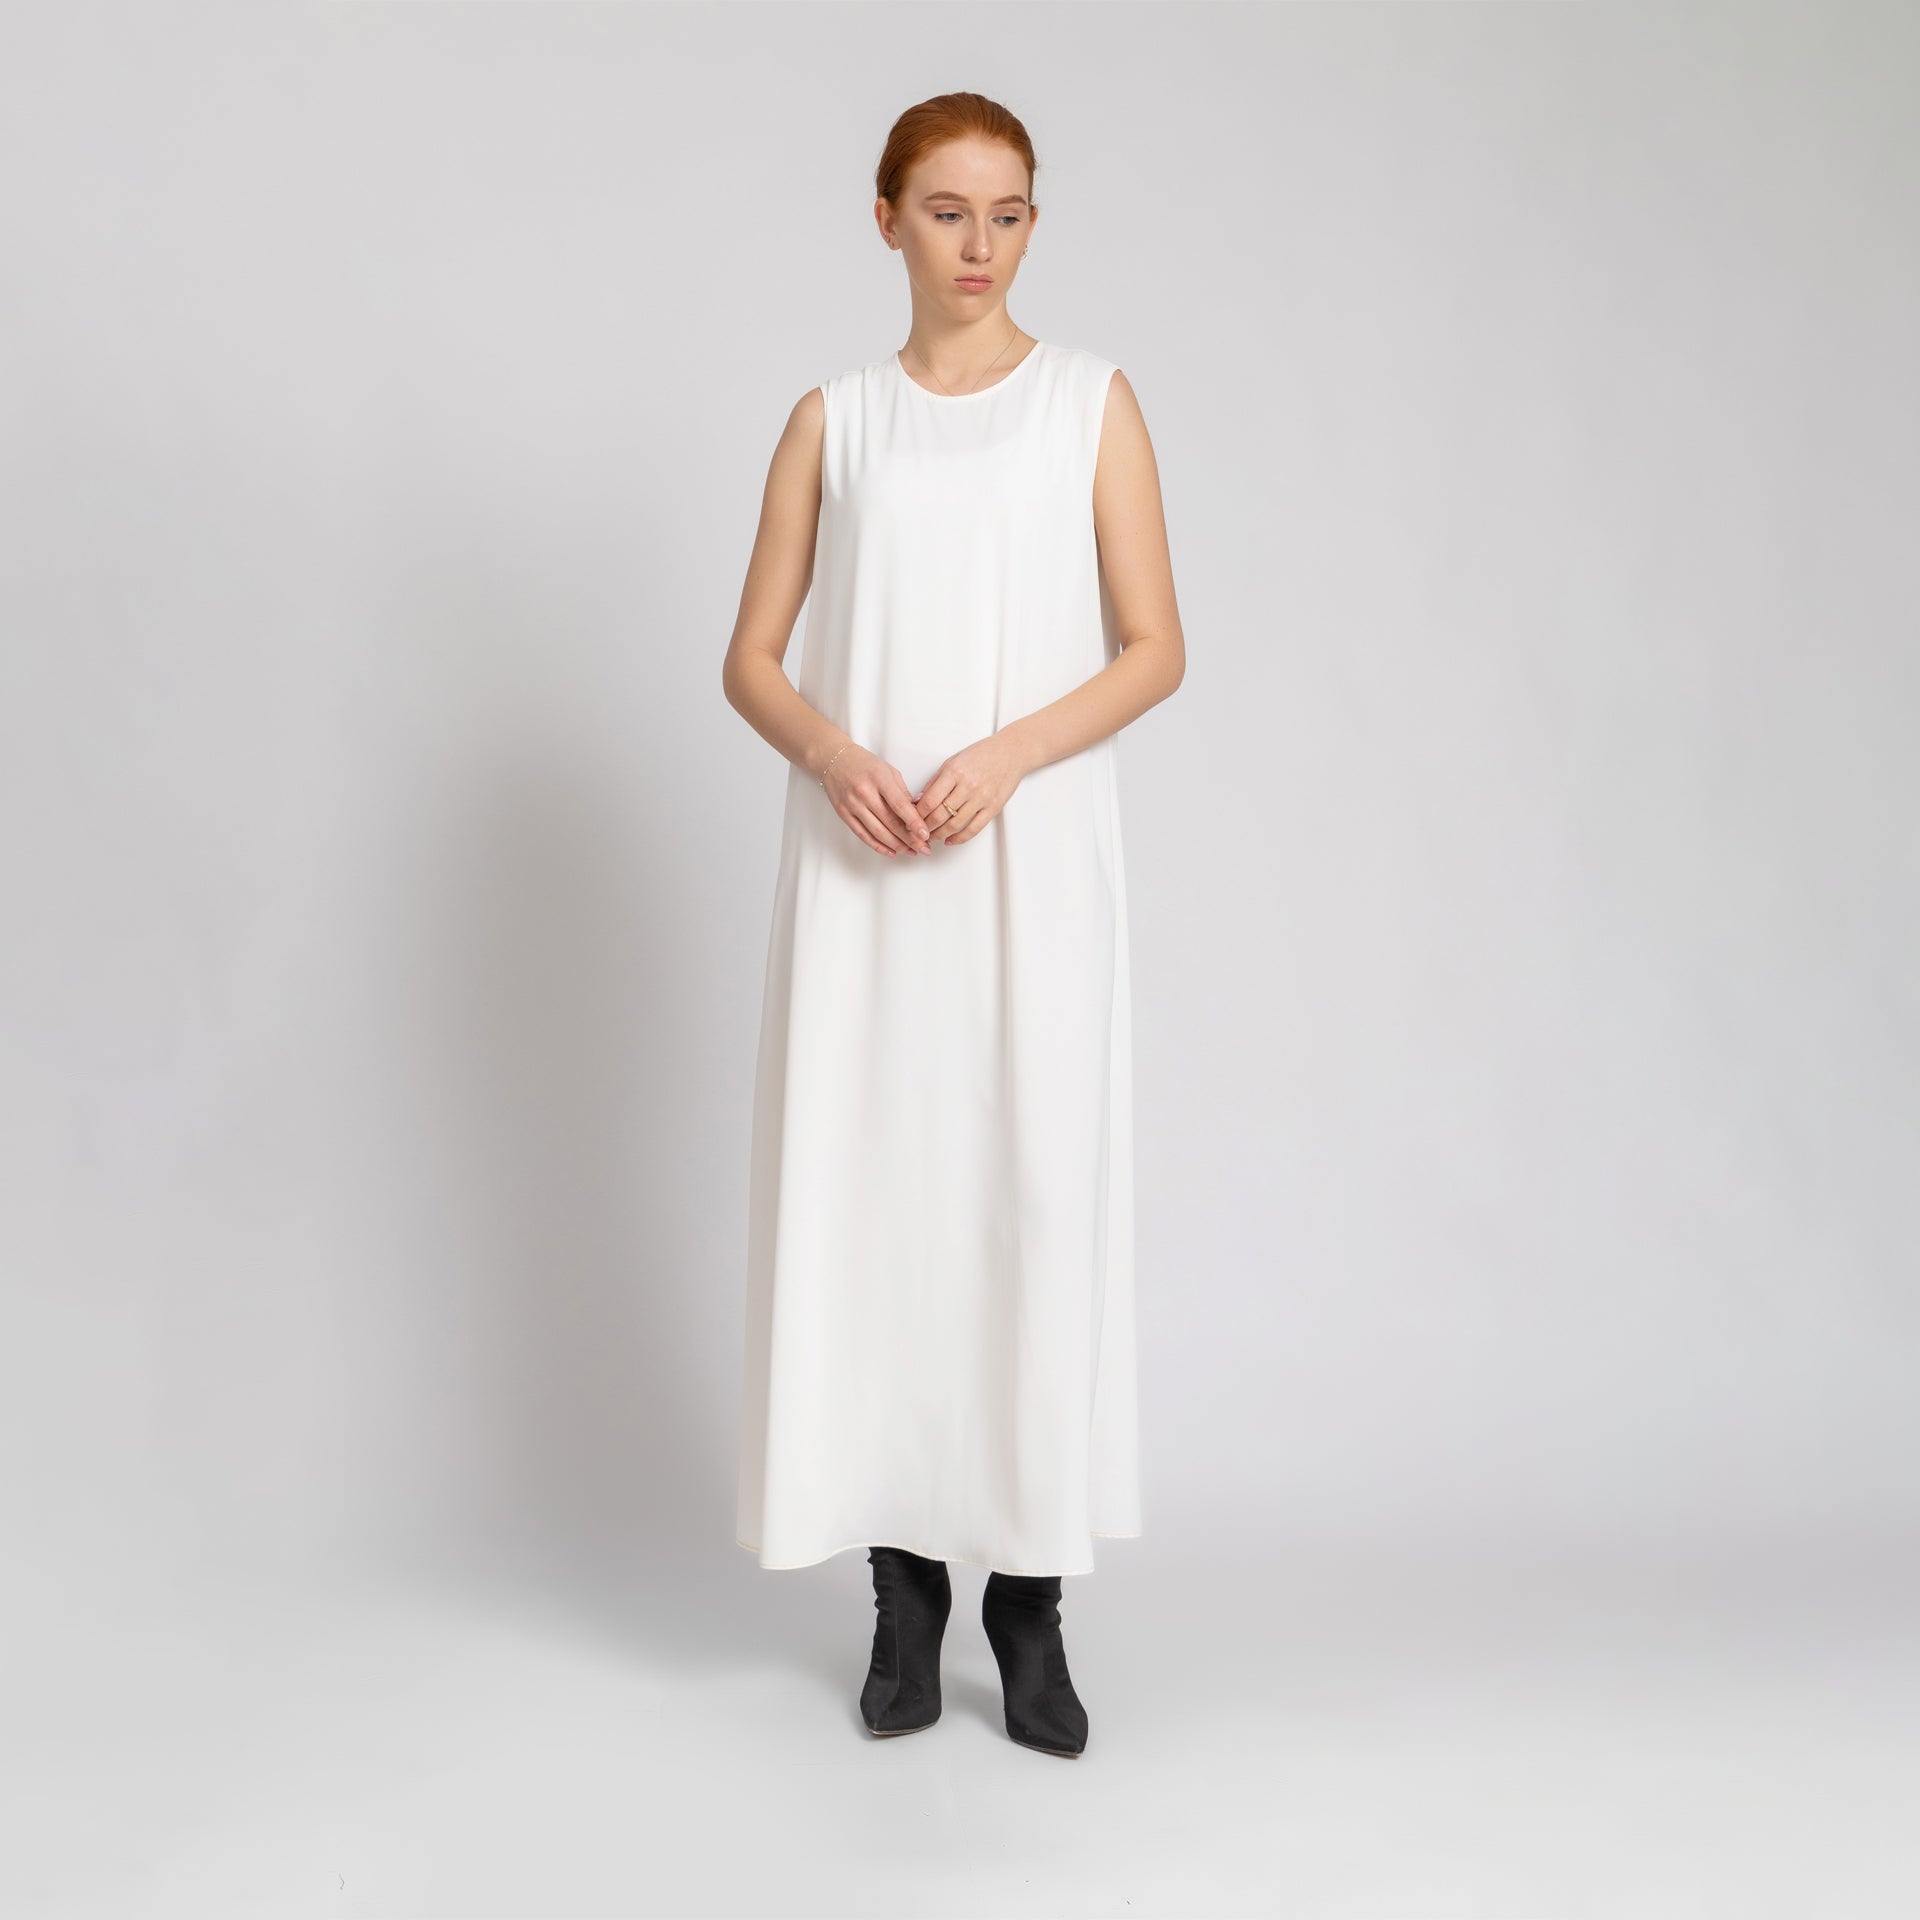 White Long Sleeveless Crepe Dress From Elanove